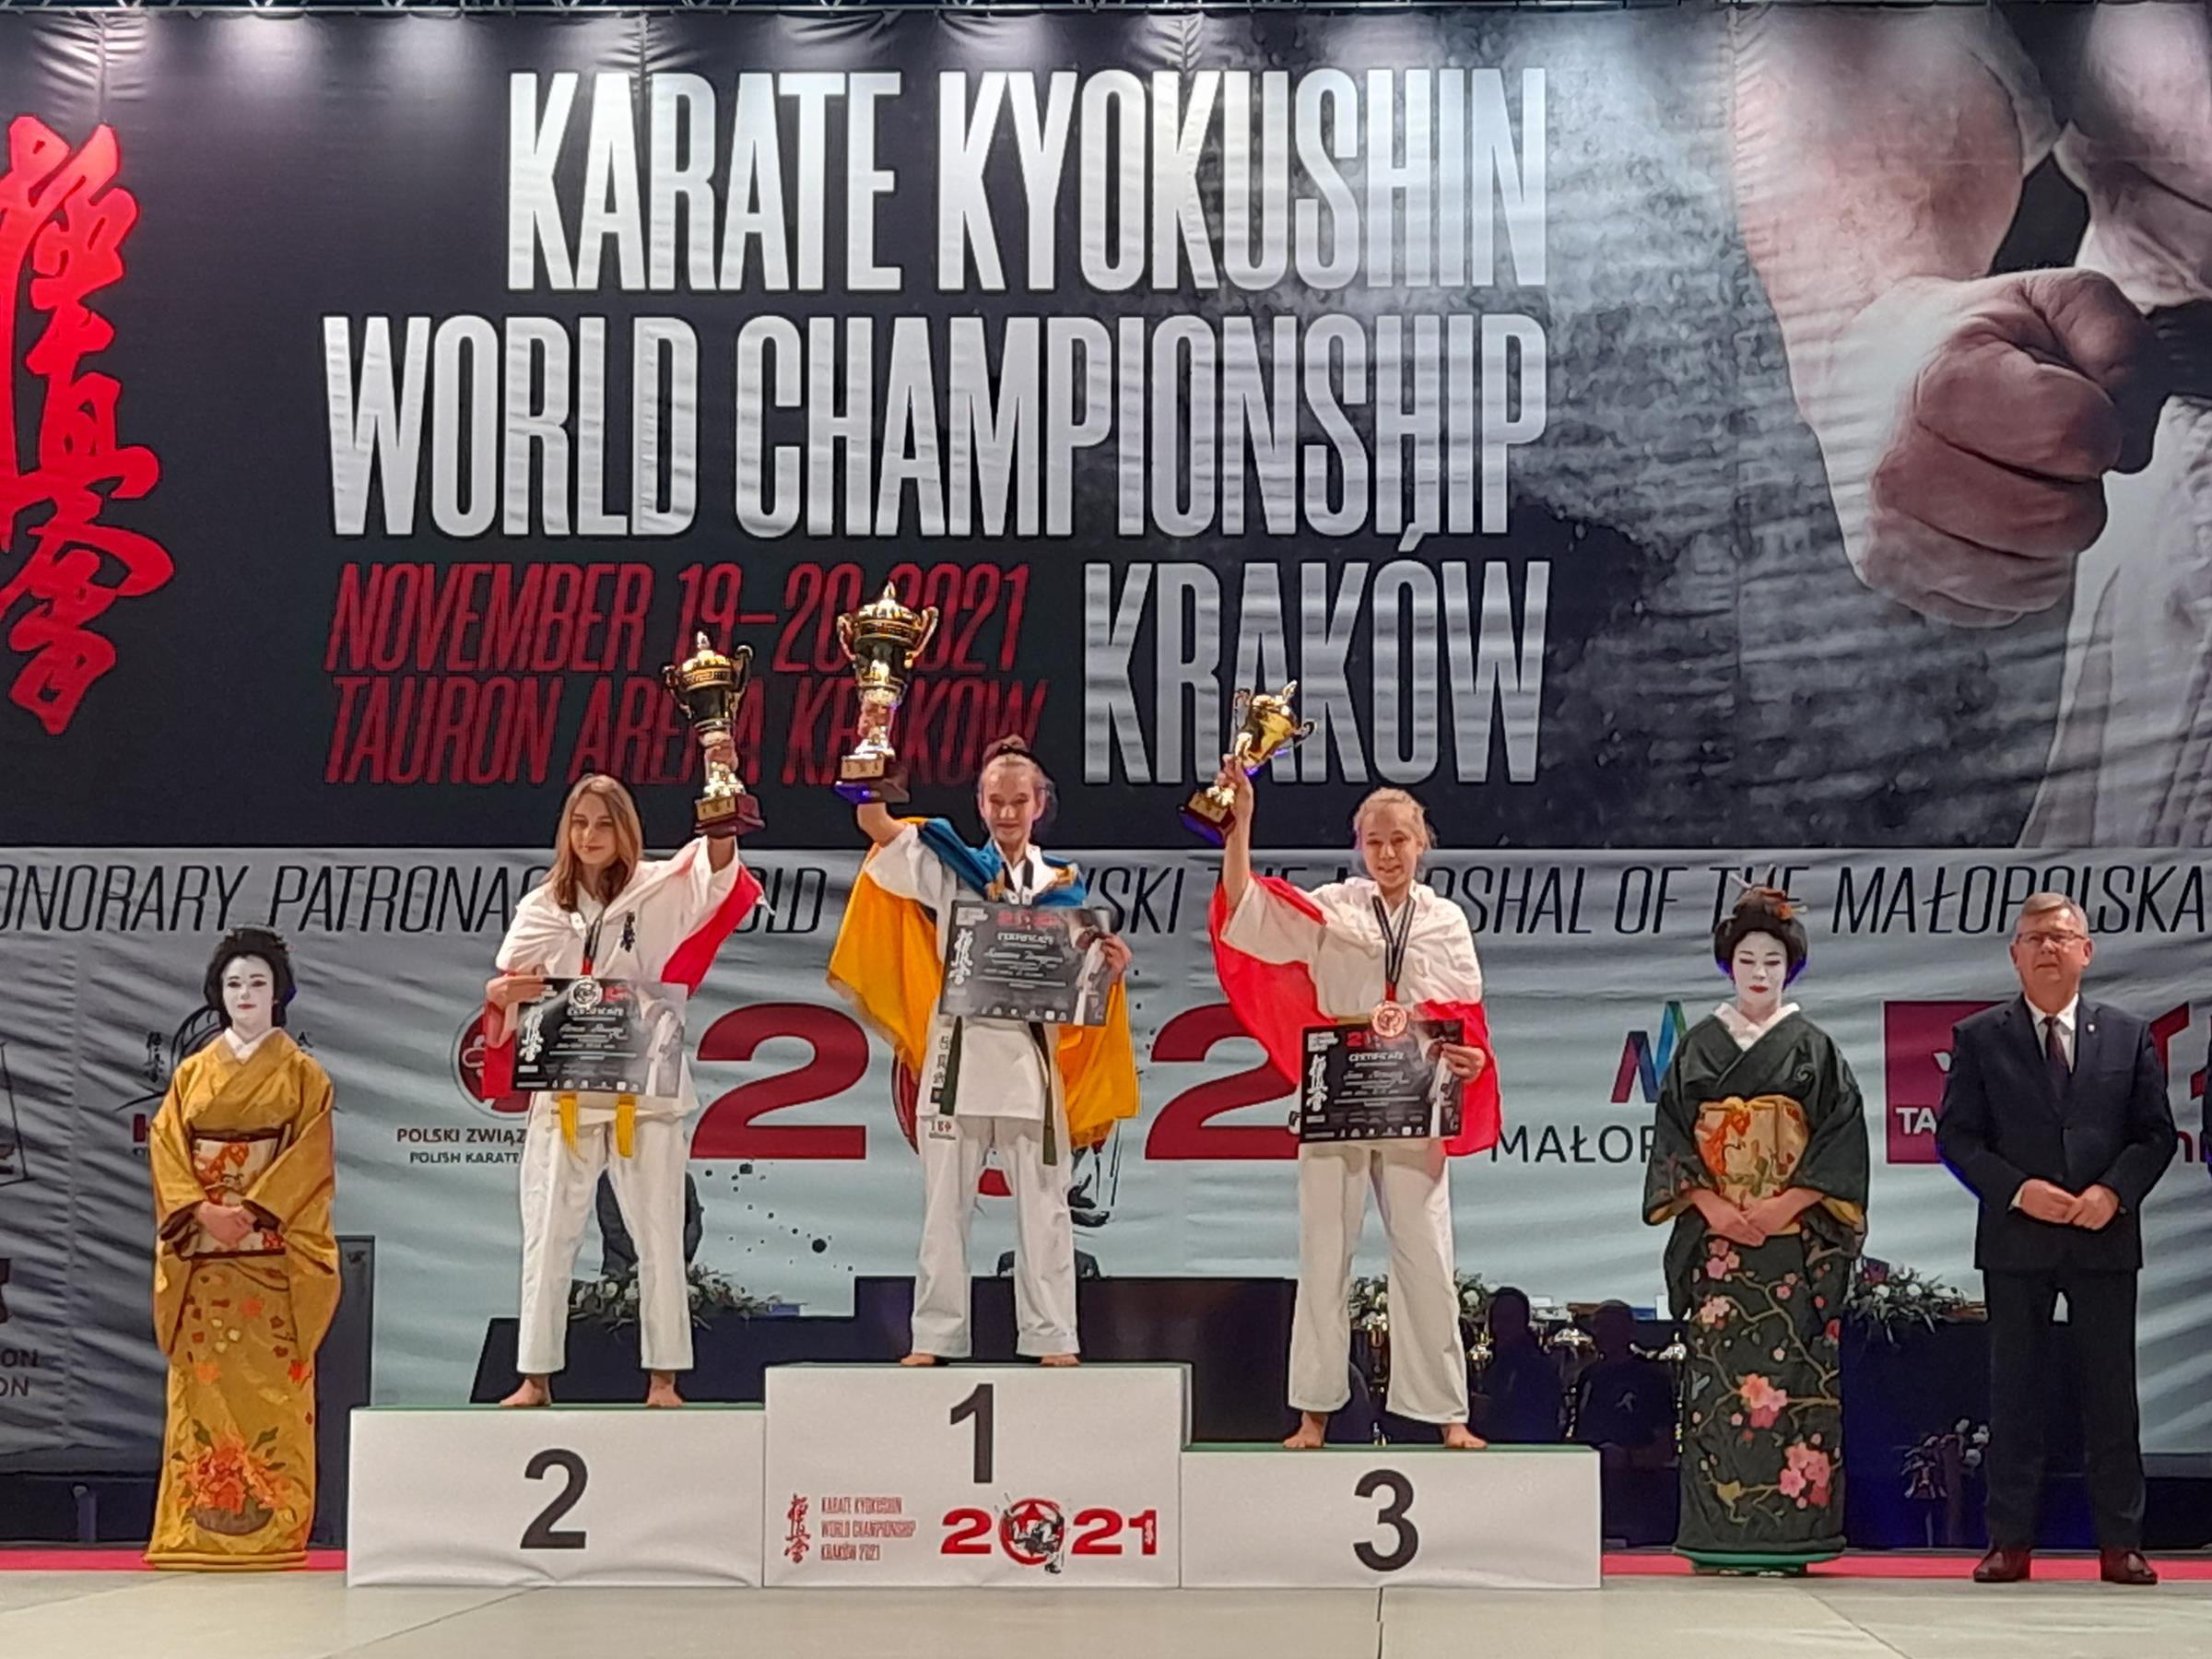 Zdj. nr. 4. Mistrzostw Świata w Karate Kyokushin - 19-20.11.2021 r., Kraków